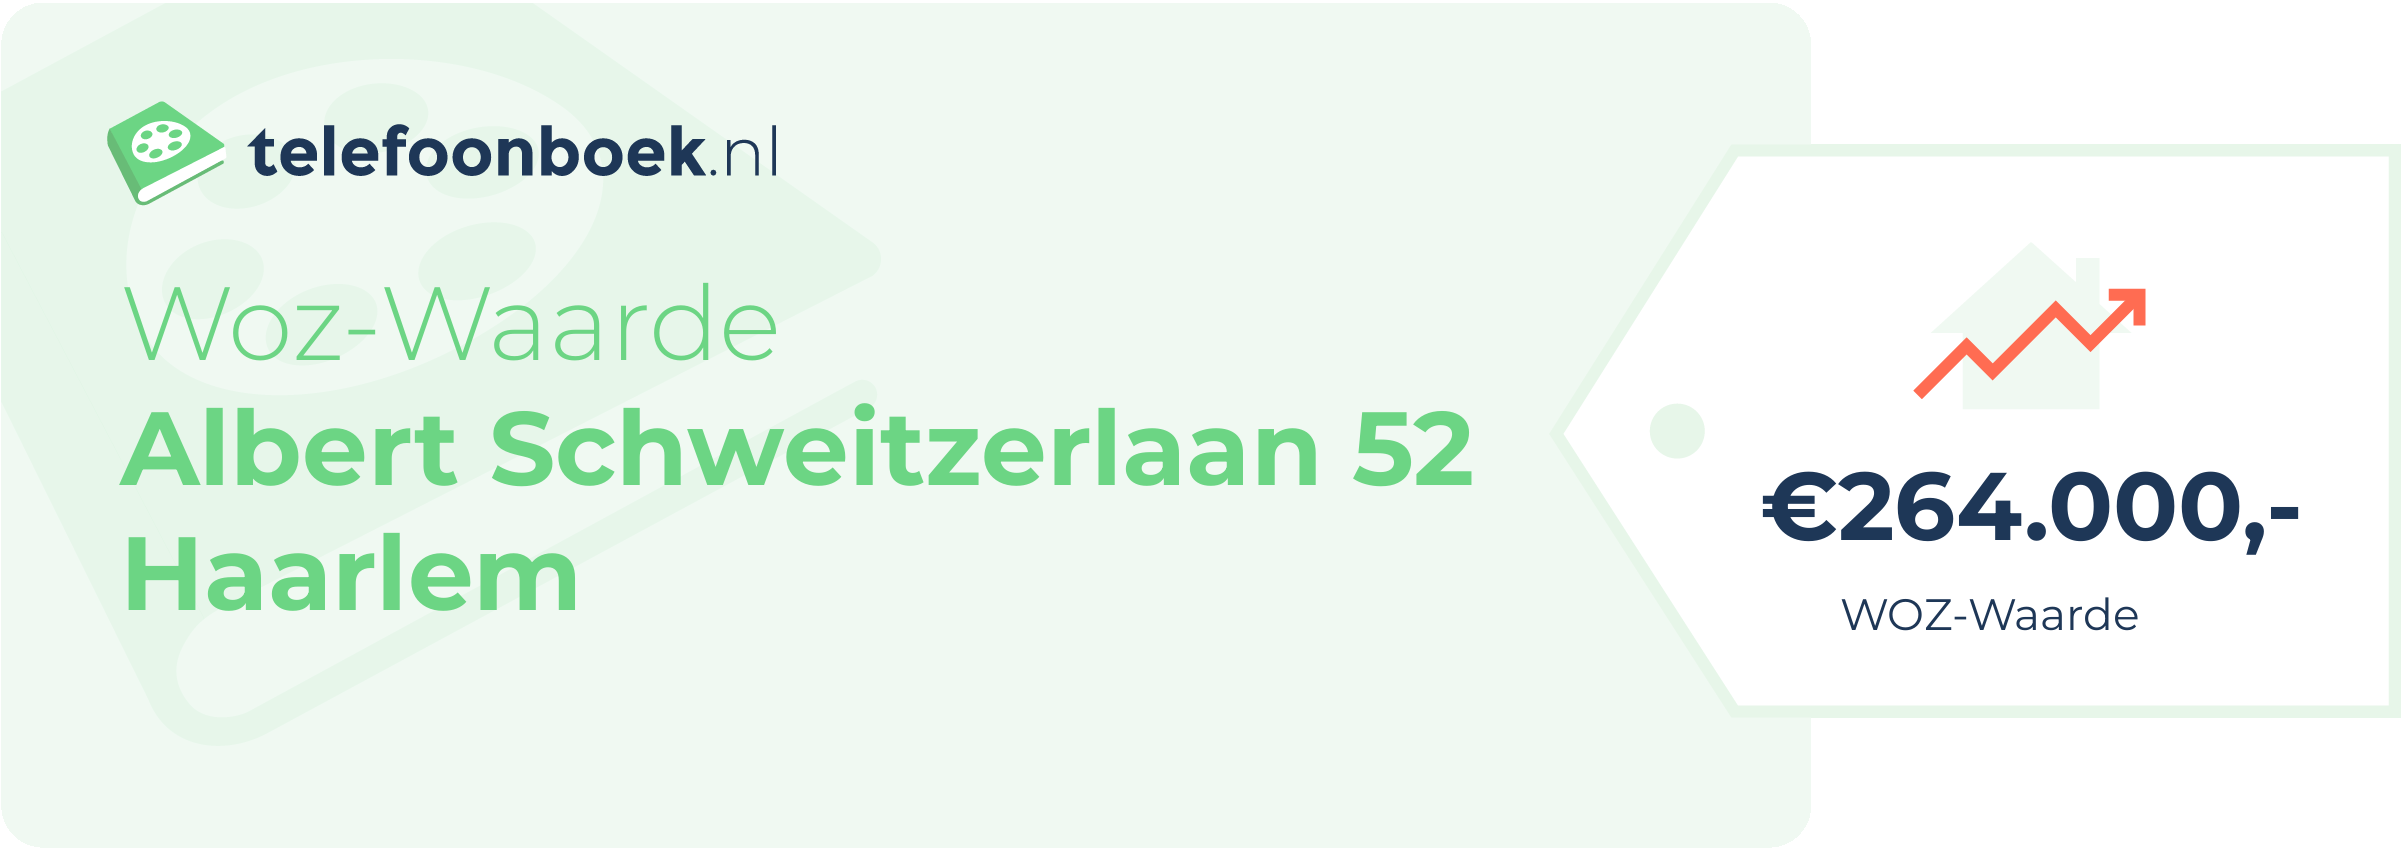 WOZ-waarde Albert Schweitzerlaan 52 Haarlem